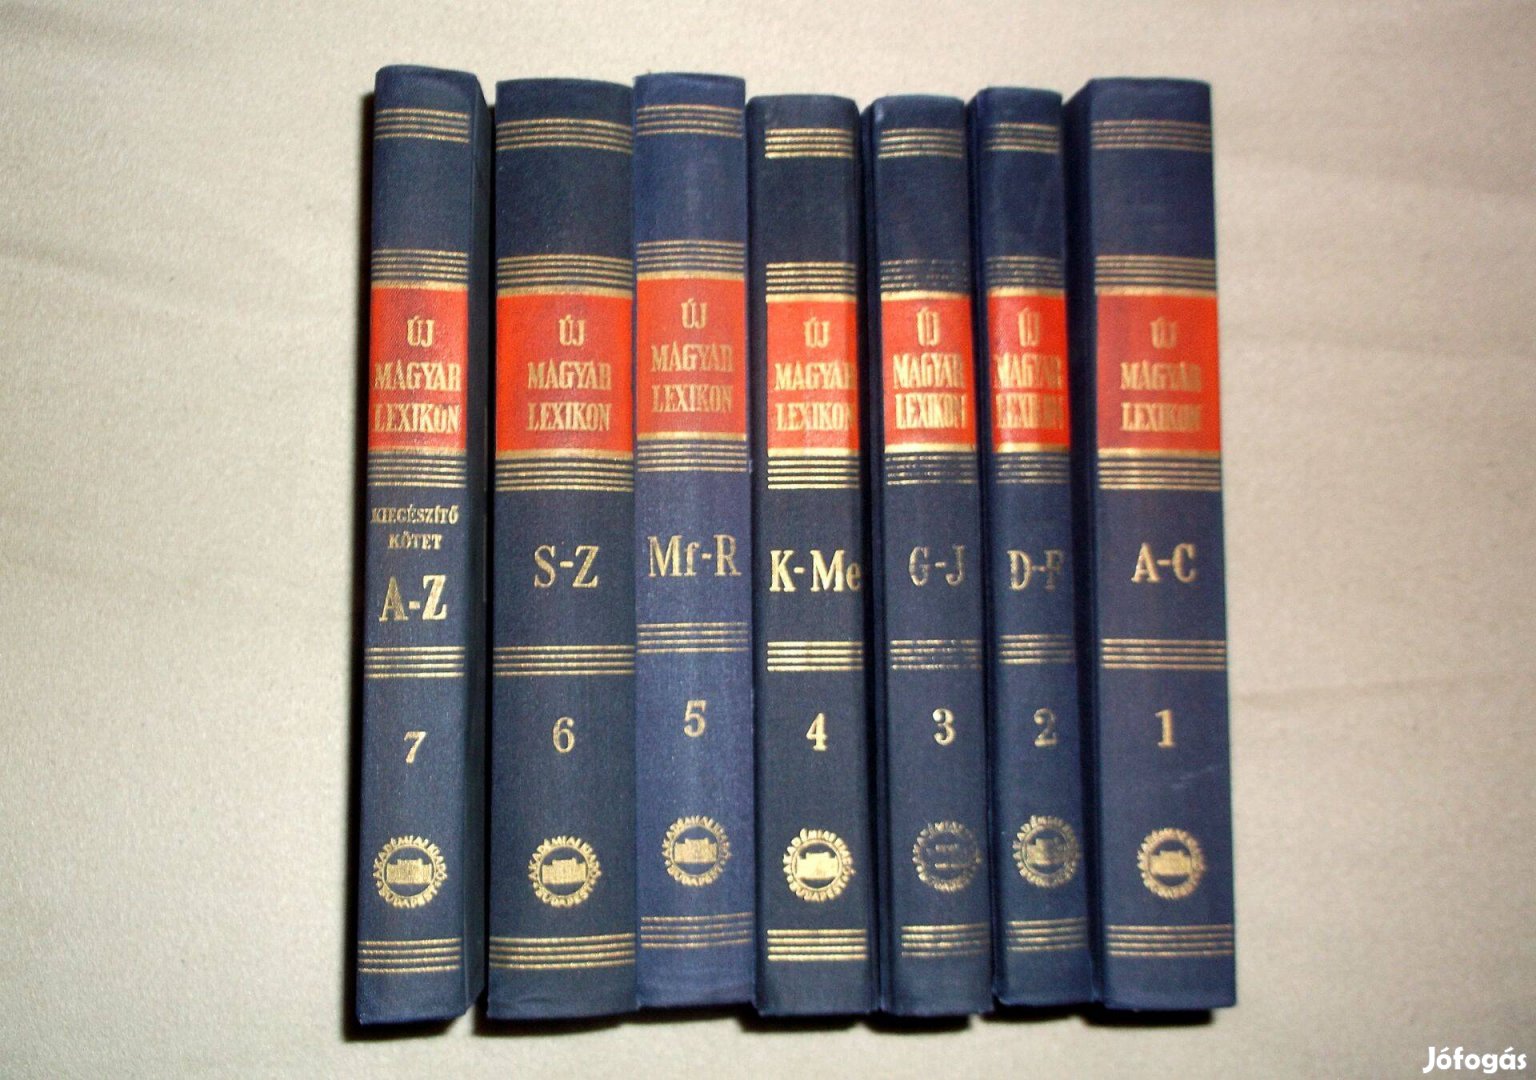 Új Magyar Lexikon I-VII. (1972) könyvcsomag (7 db egyben 1200 Ft)